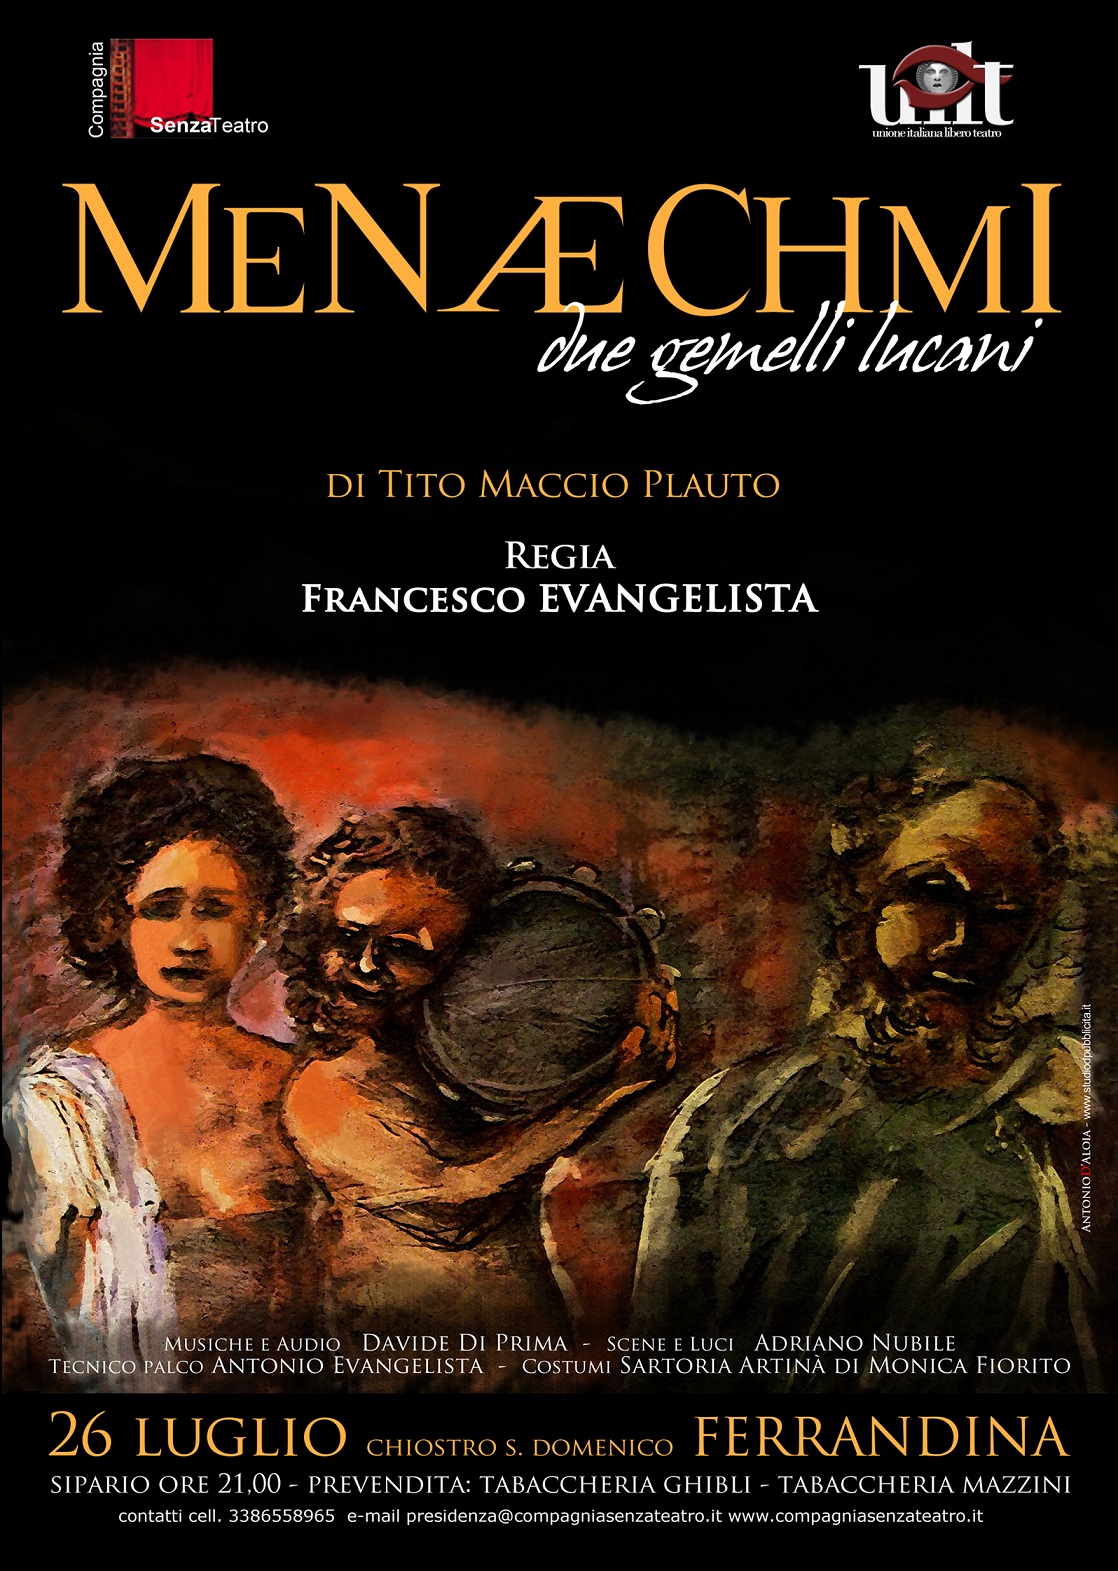 26 Luglio 2015 Menaechmi “Due Gemelli Lucani” Ferrandina-MT-Chiostro S. Domenico ore 21.00